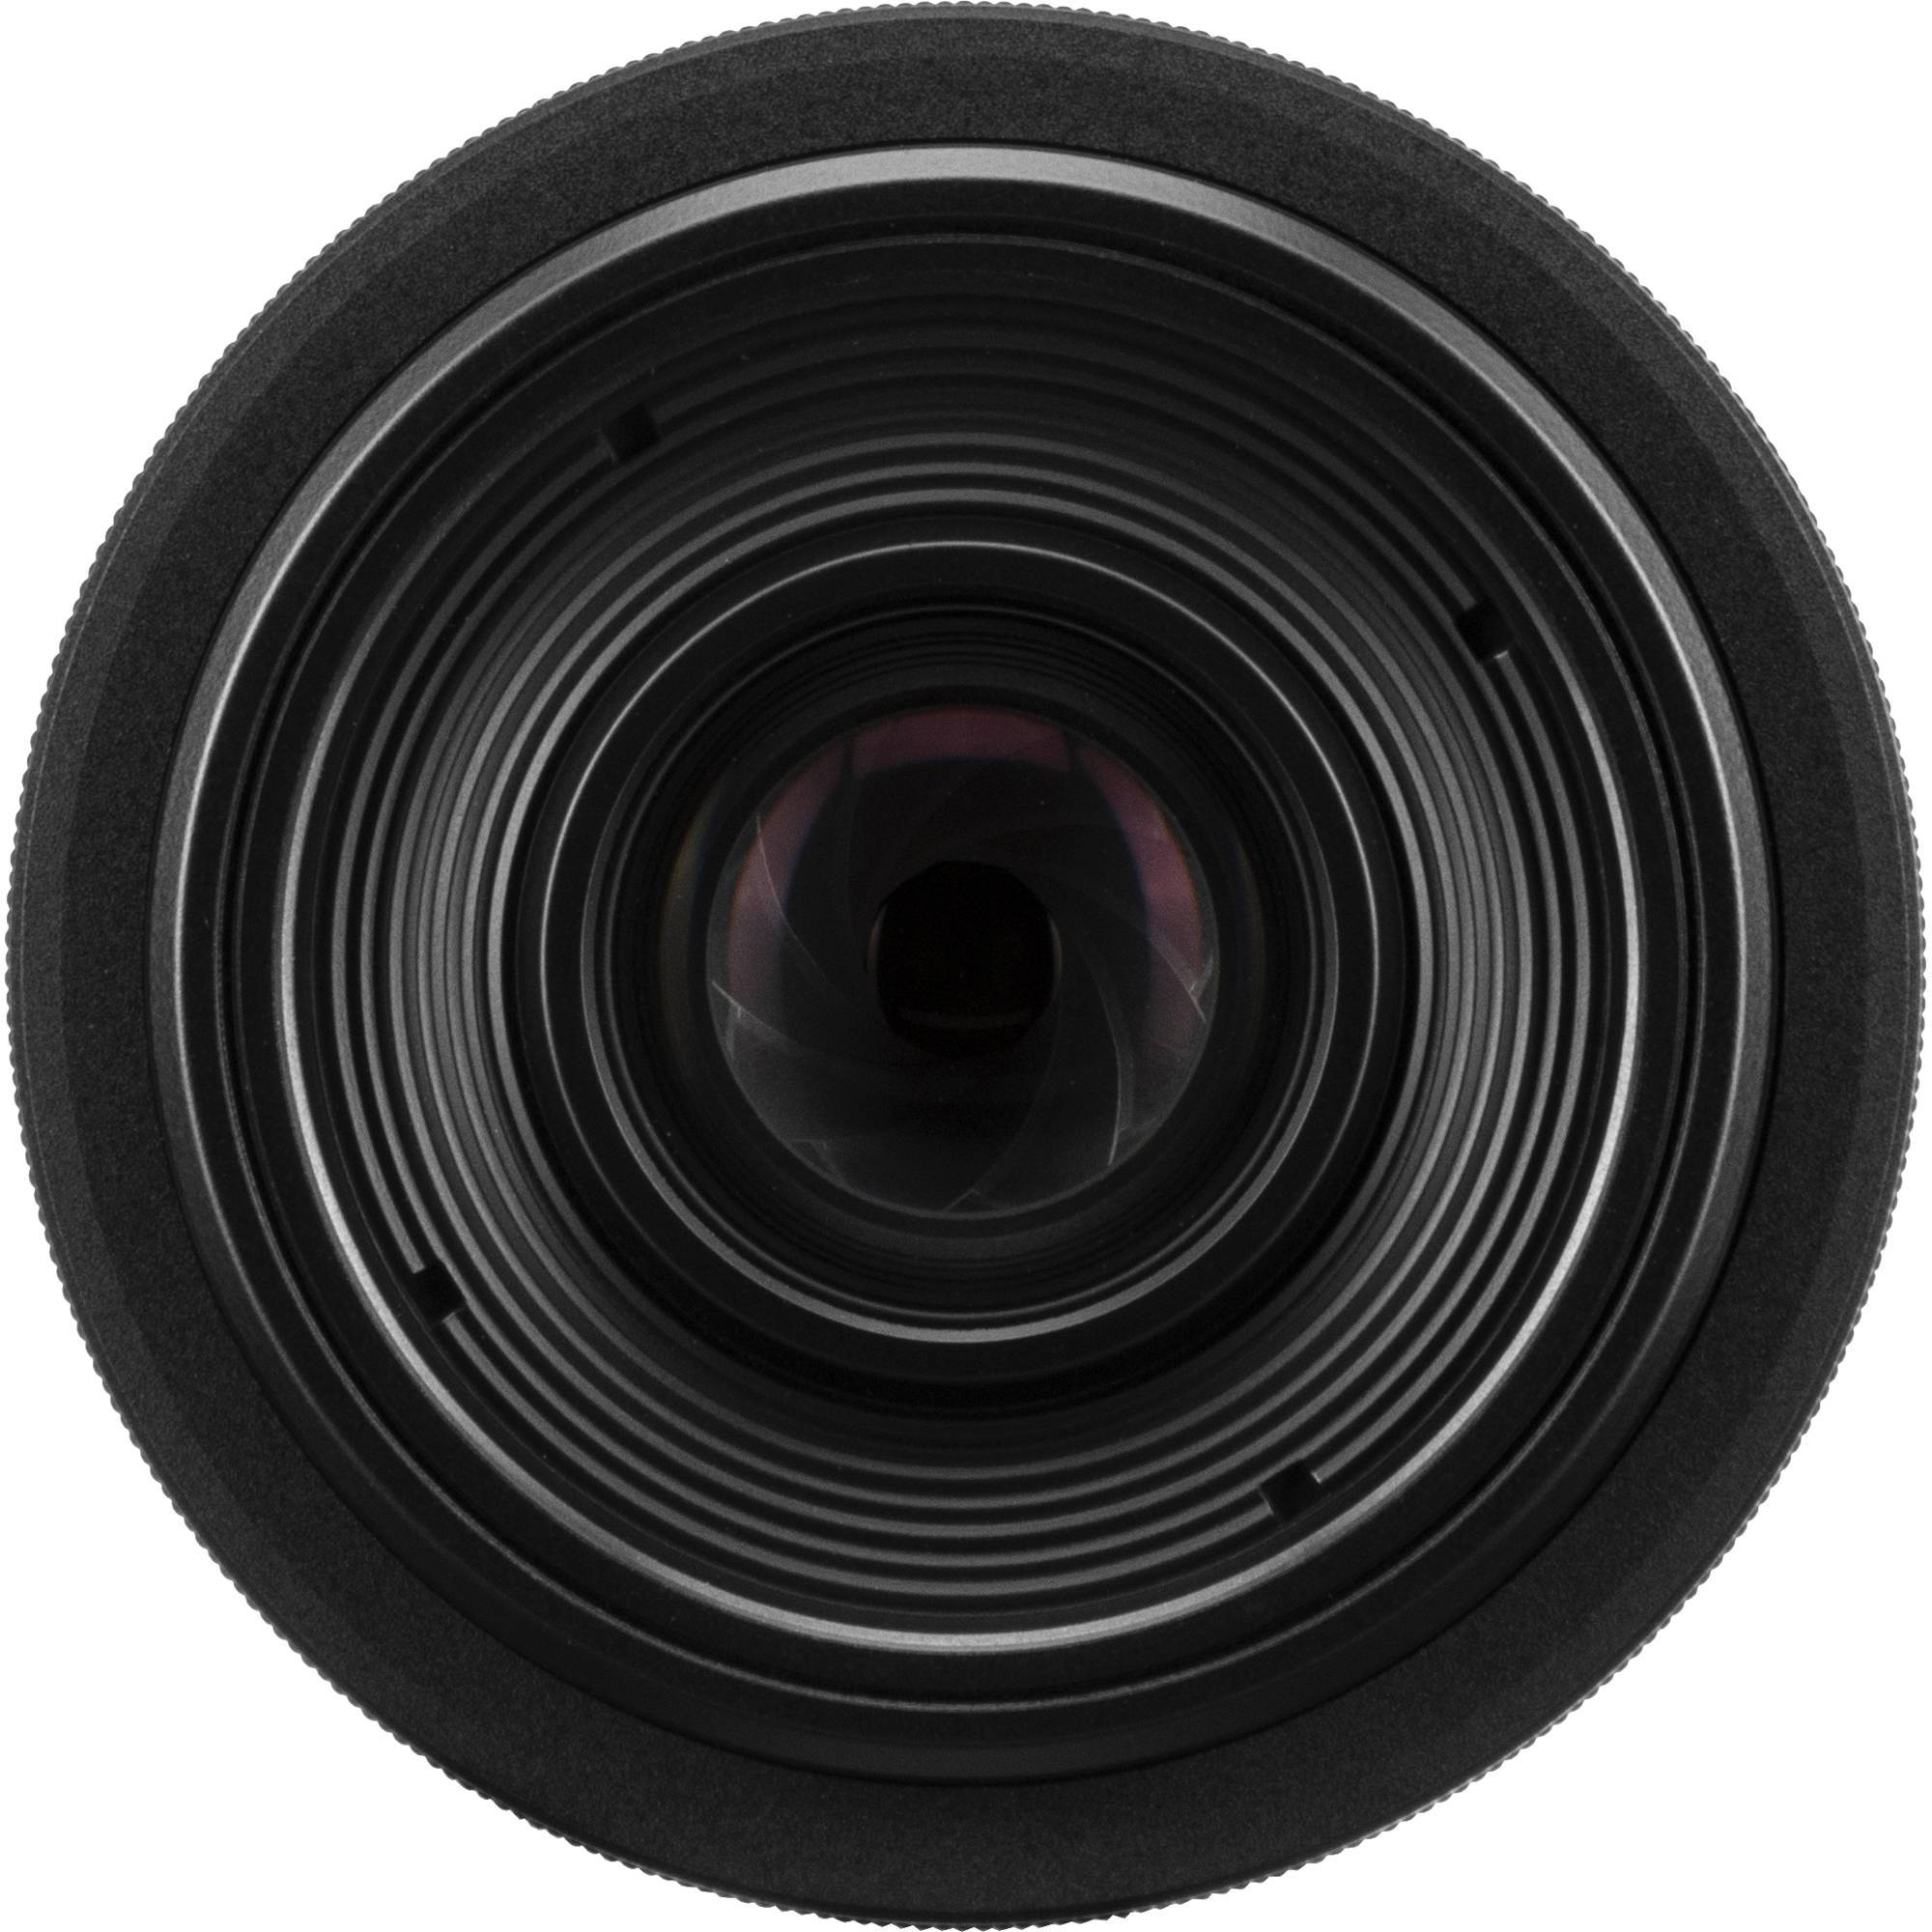 Canon Lens RF 35mm F1.8 MACRO IS STM